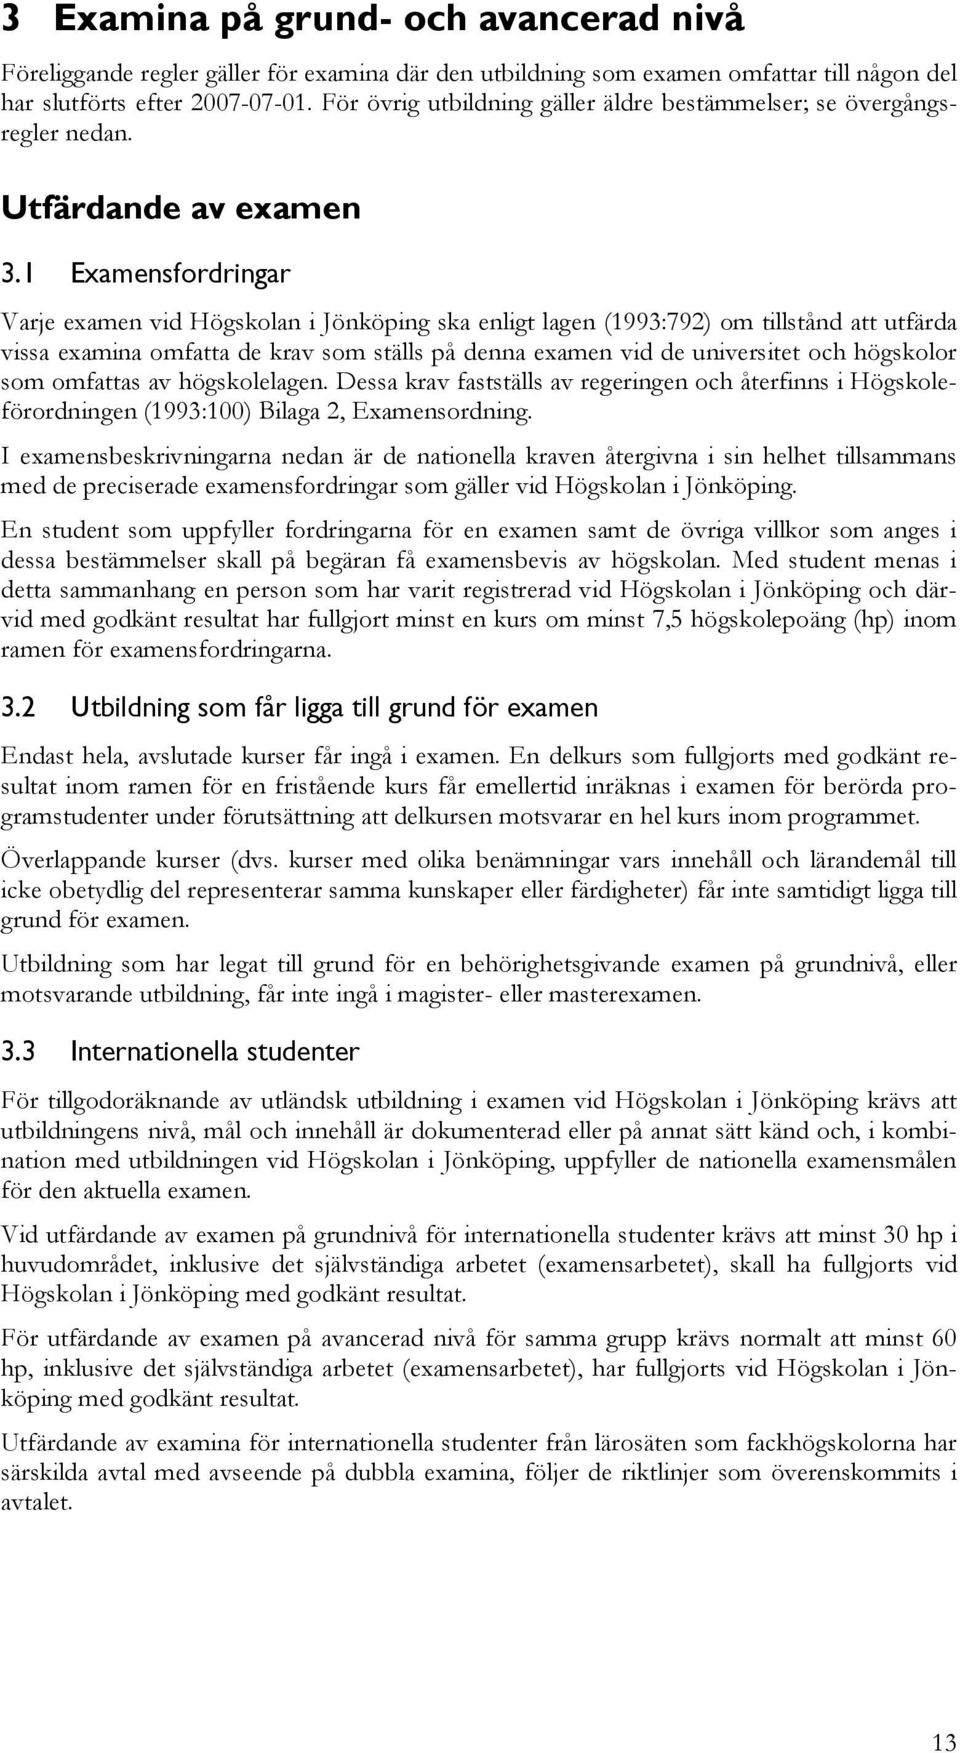 1 Eamensfordringar Varje eamen vid Högskolan i Jönköping ska enligt lagen (1993:792) om tillstånd att utfärda vissa eamina omfatta de krav som ställs på denna eamen vid de universitet och högskolor